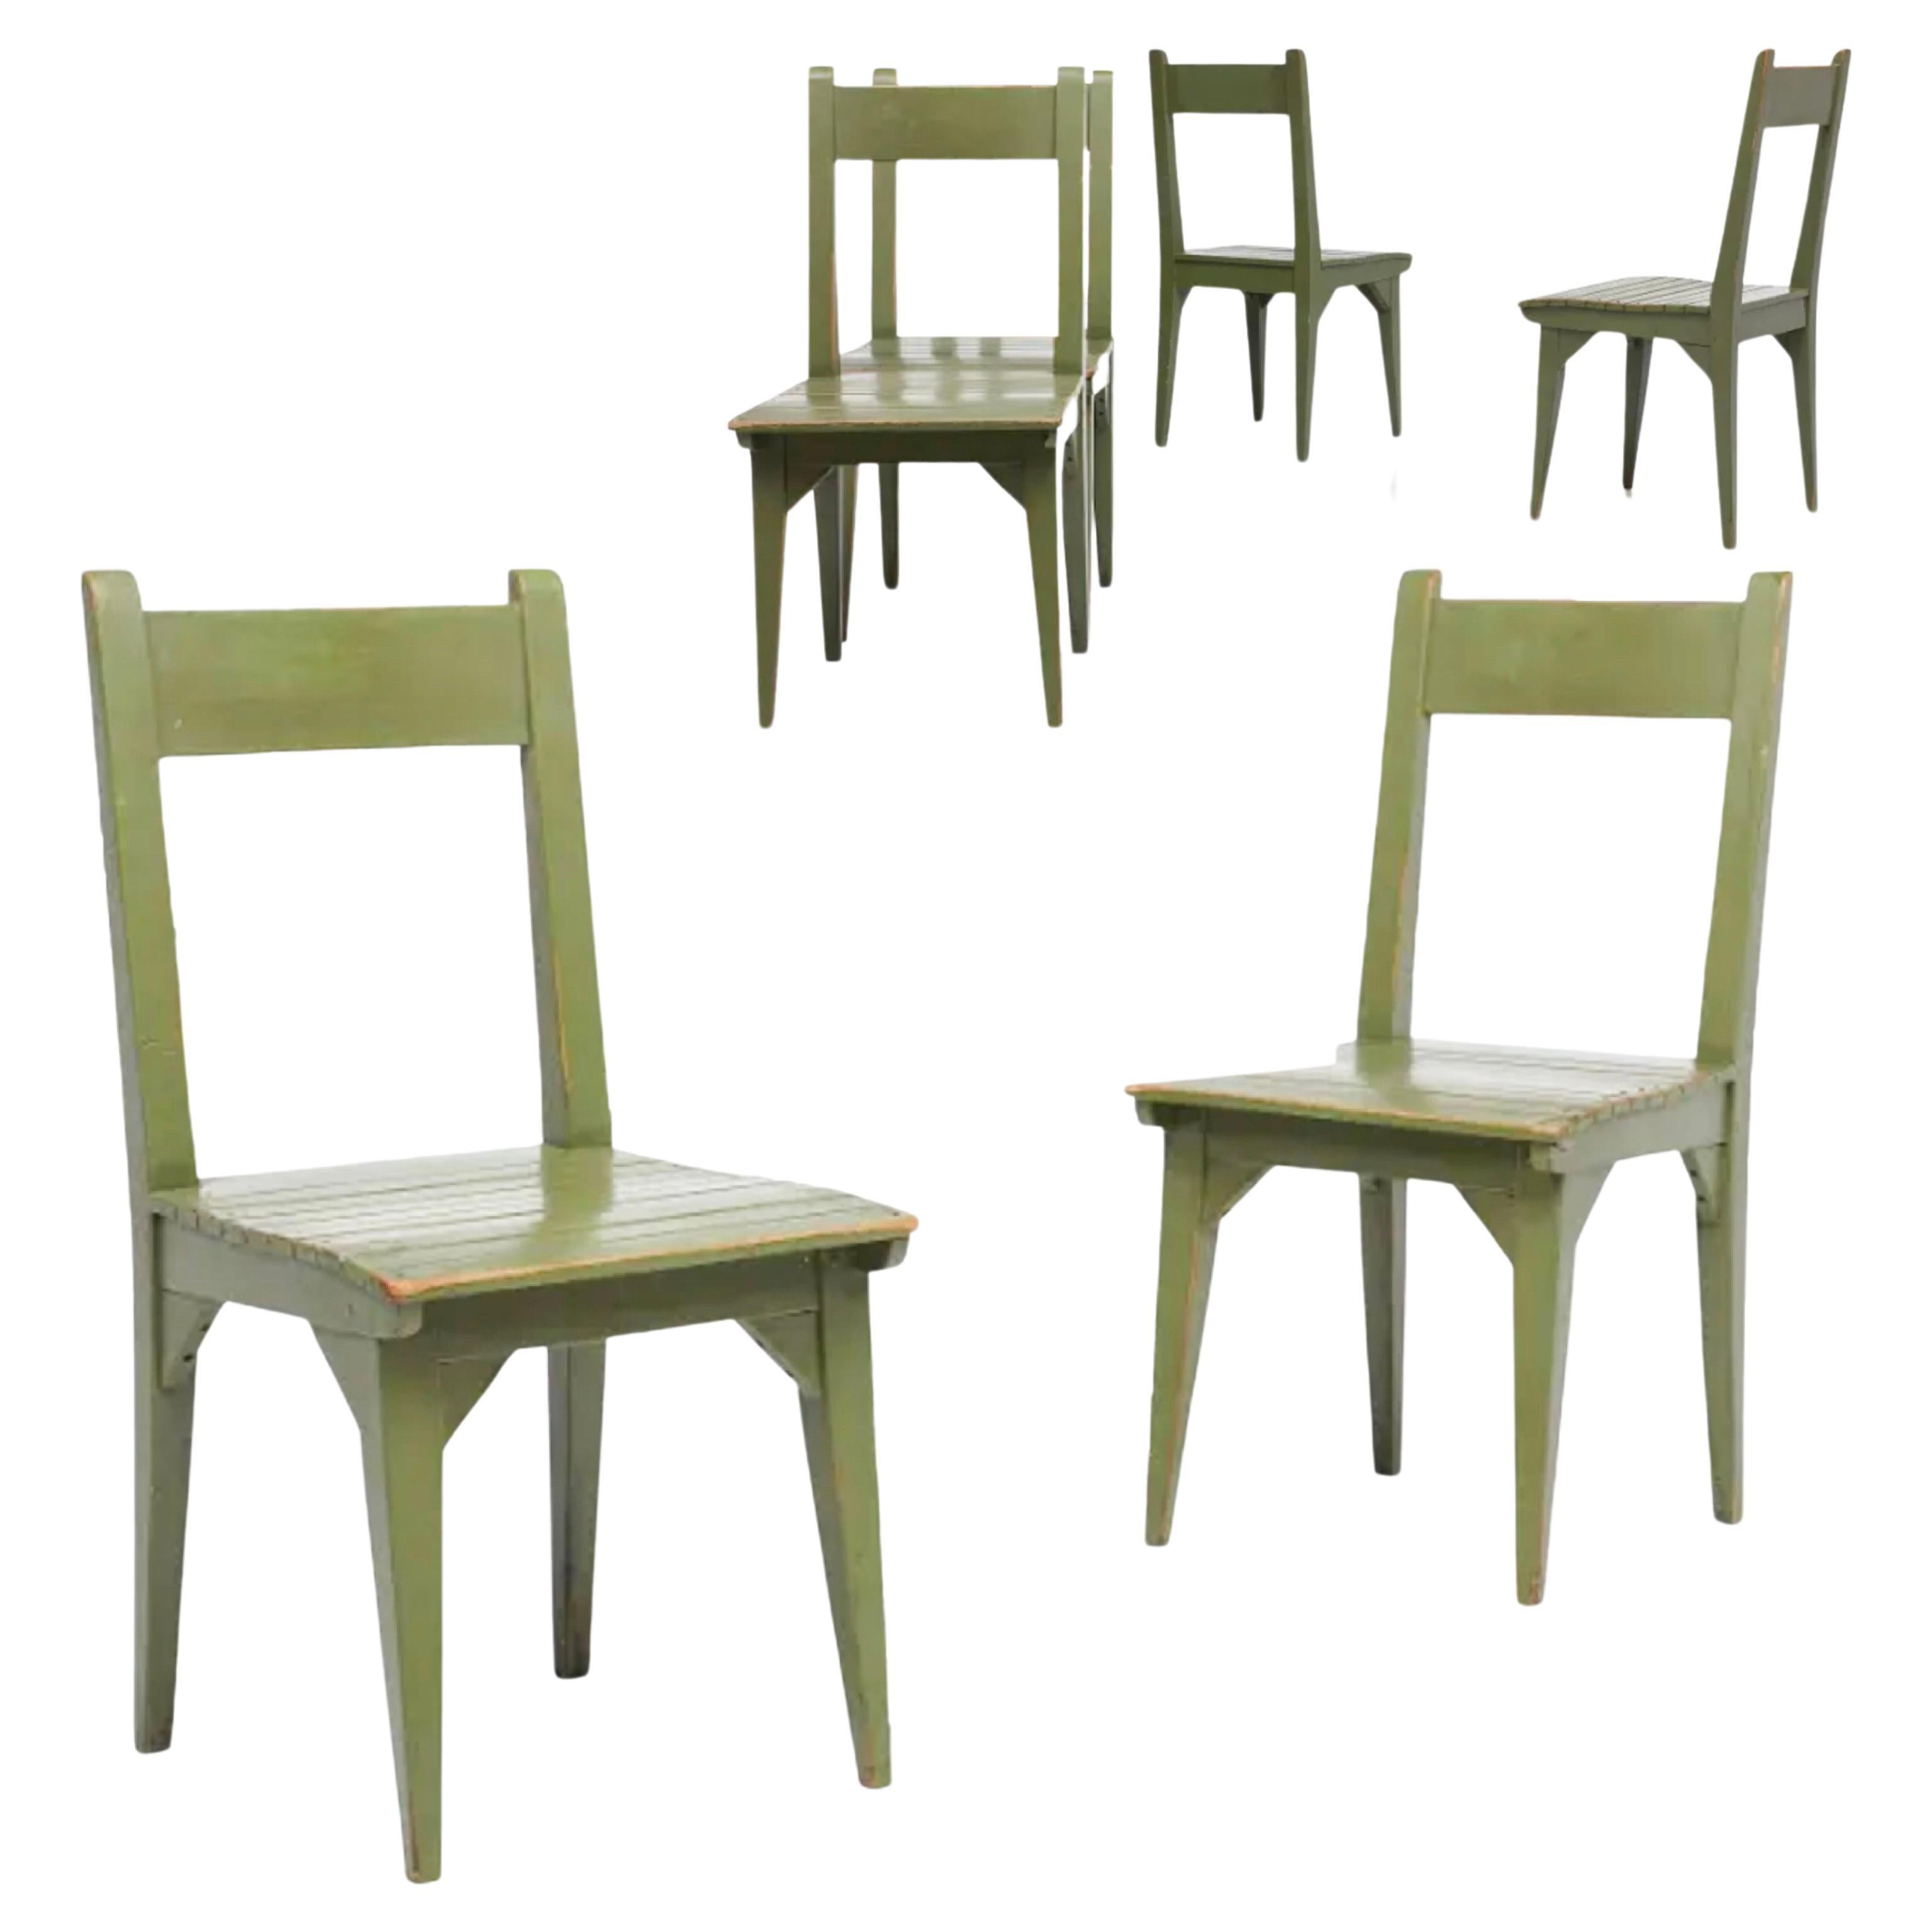 Roy McMakin, Ensemble de chaises de salle à manger en bois postmoderne peint sur mesure, 1982. Commande sur mesure réalisée par Domestic Furniture, Californie.  Chacun : 35